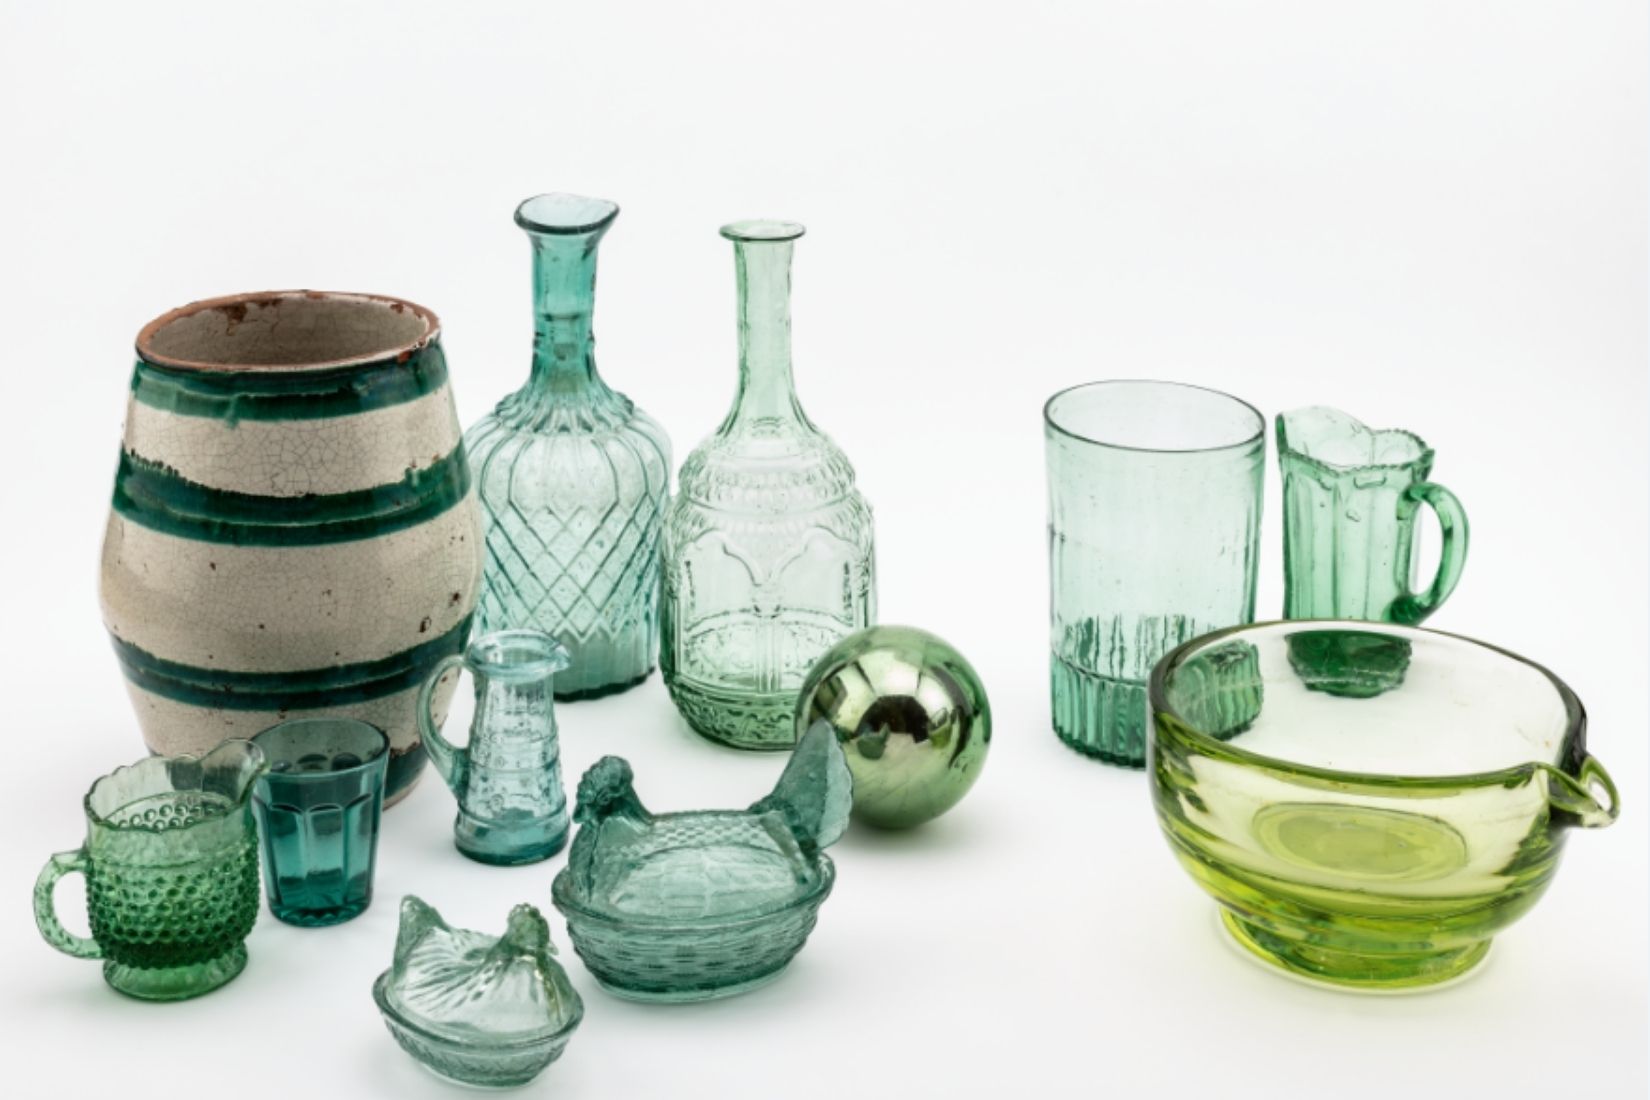 Conjunto de vasos, copas y jarras de vidrio. Diversos artesanos y procedencias. (Foto: Tachi).